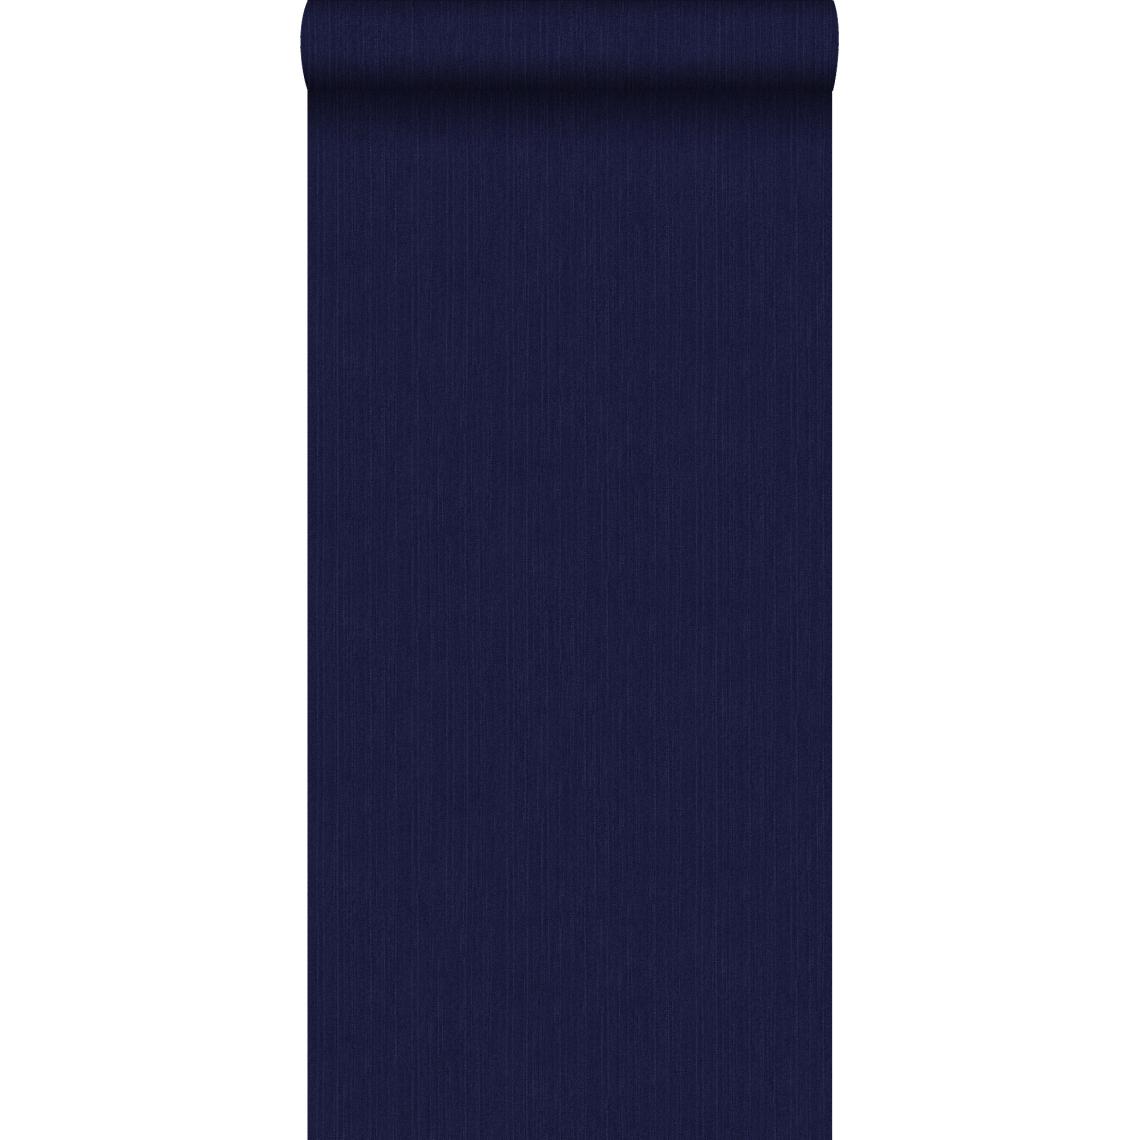 ESTAhome - ESTAhome papier peint texture denim jeans bleu foncé - 137735 - 53 cm x 10,05 m - Papier peint